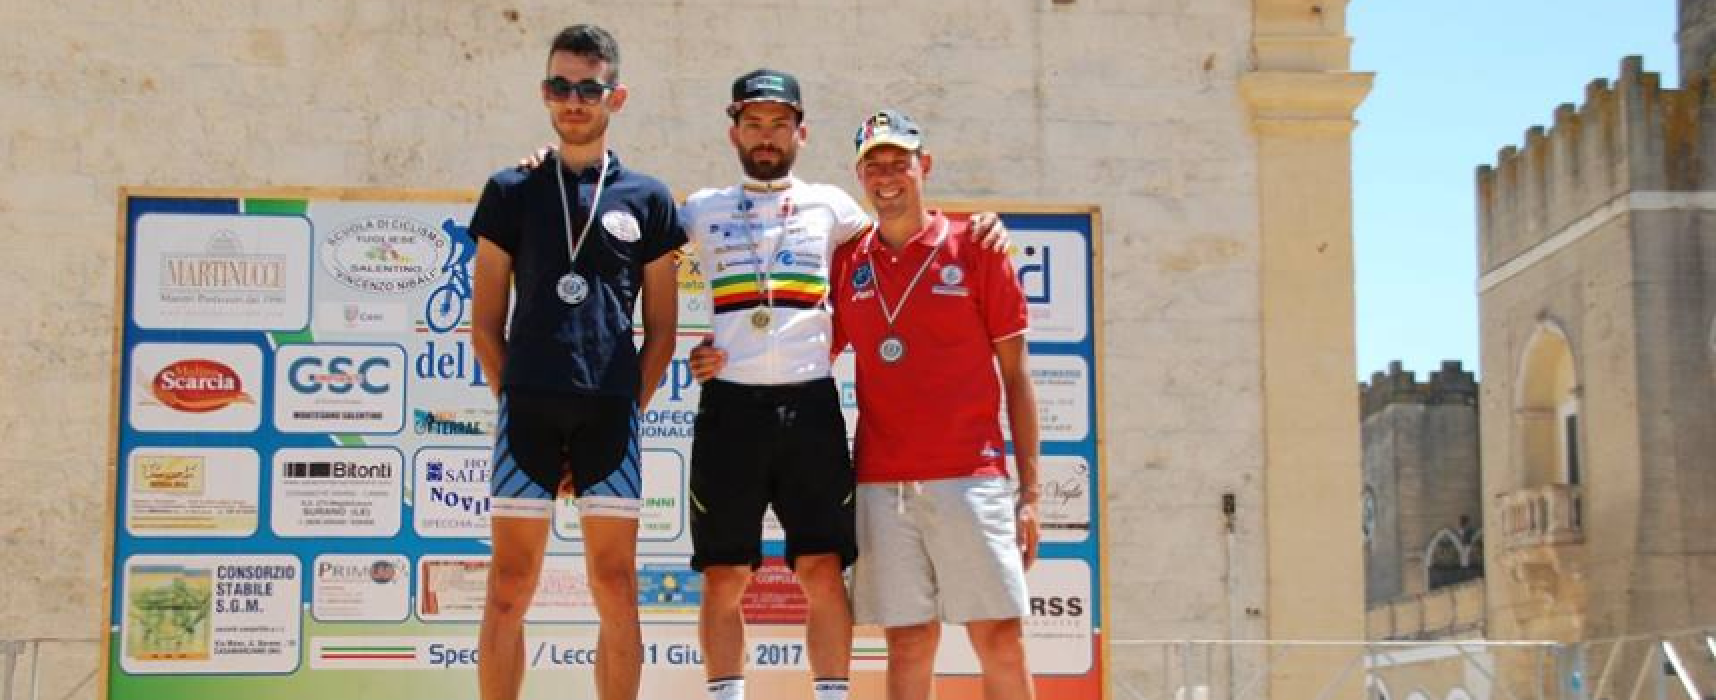 Ciclismo: Cavallaro, tre titoli regionali nella gara Cross country di Specchia